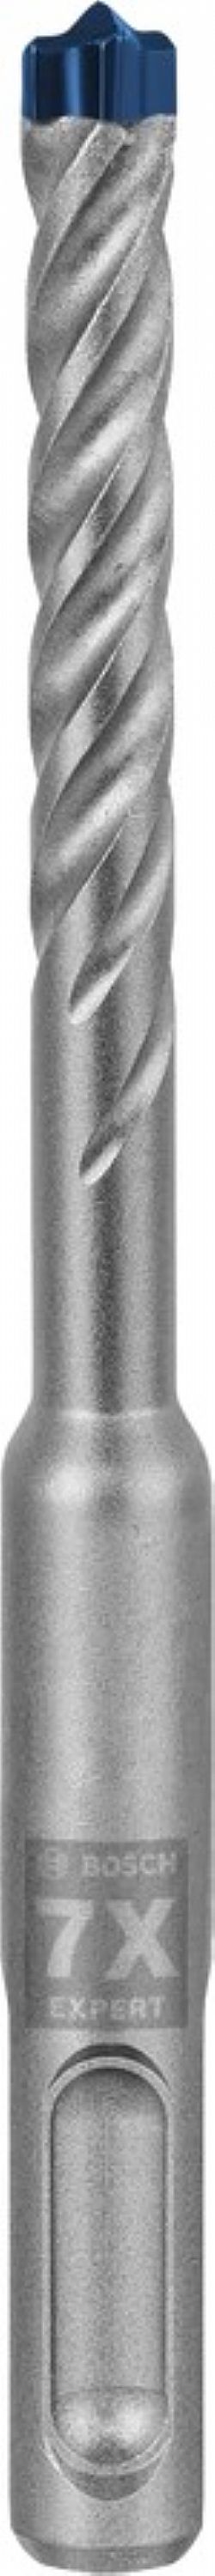 Κρουστικό τρυπάνι (7.0Χ115mm) EXPERT SDS-PLUS-7X BOSCH